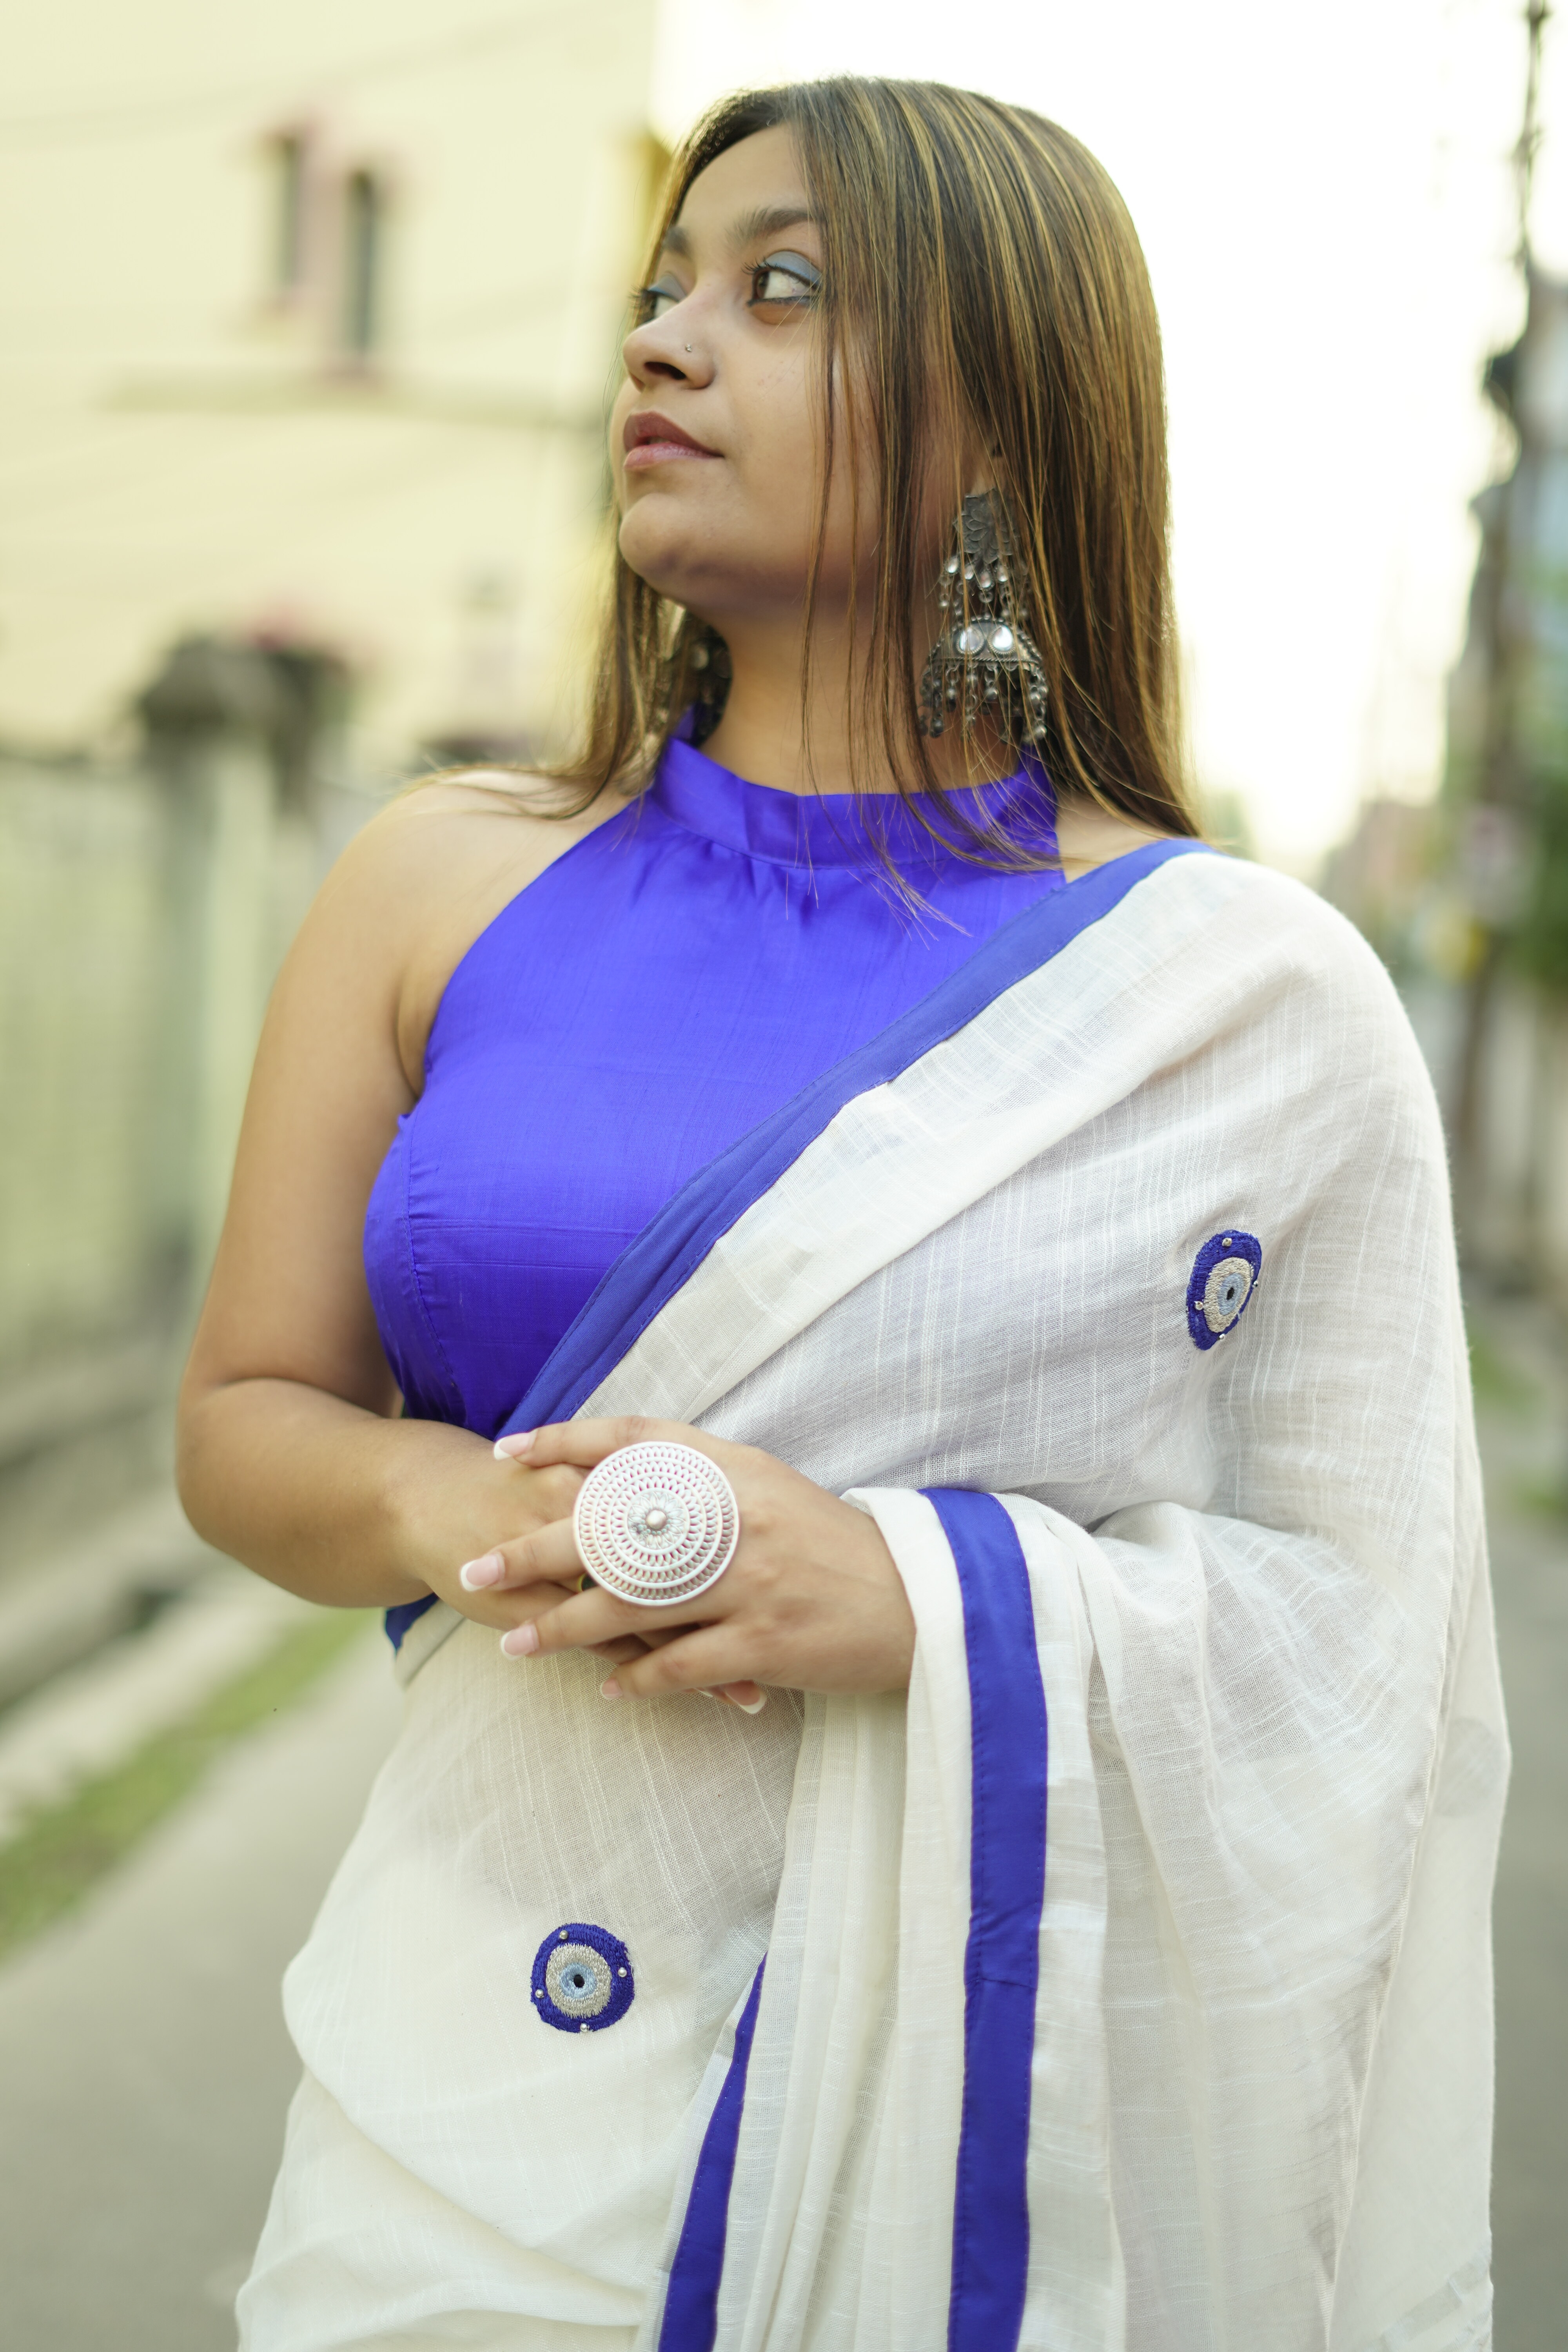 Dori Calcutta | Behind her eyes|6